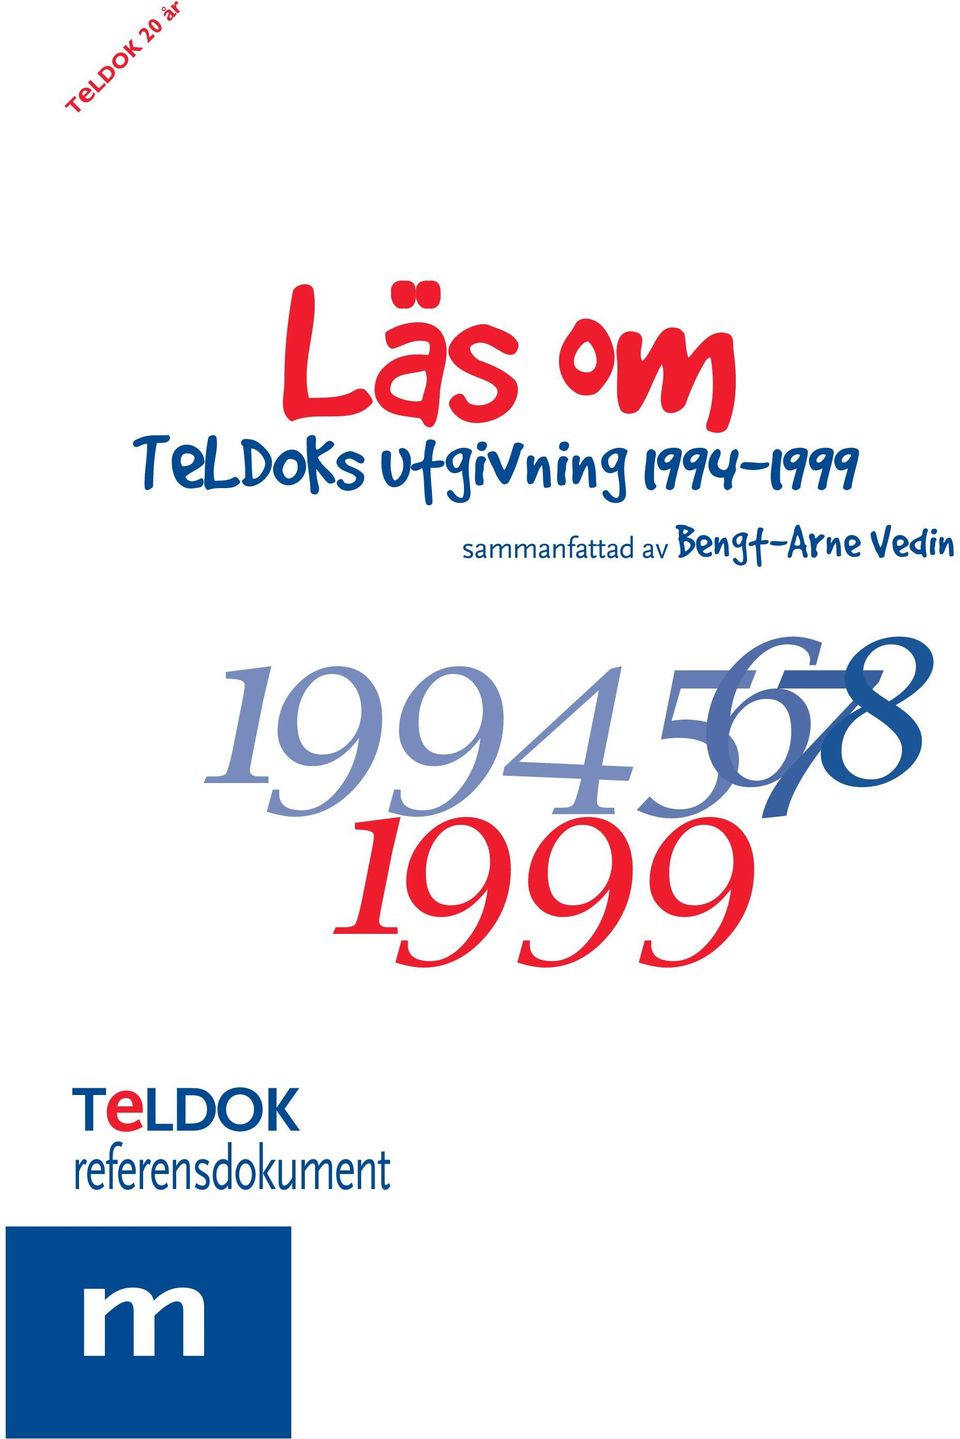 1994-1999 sammanfattad av